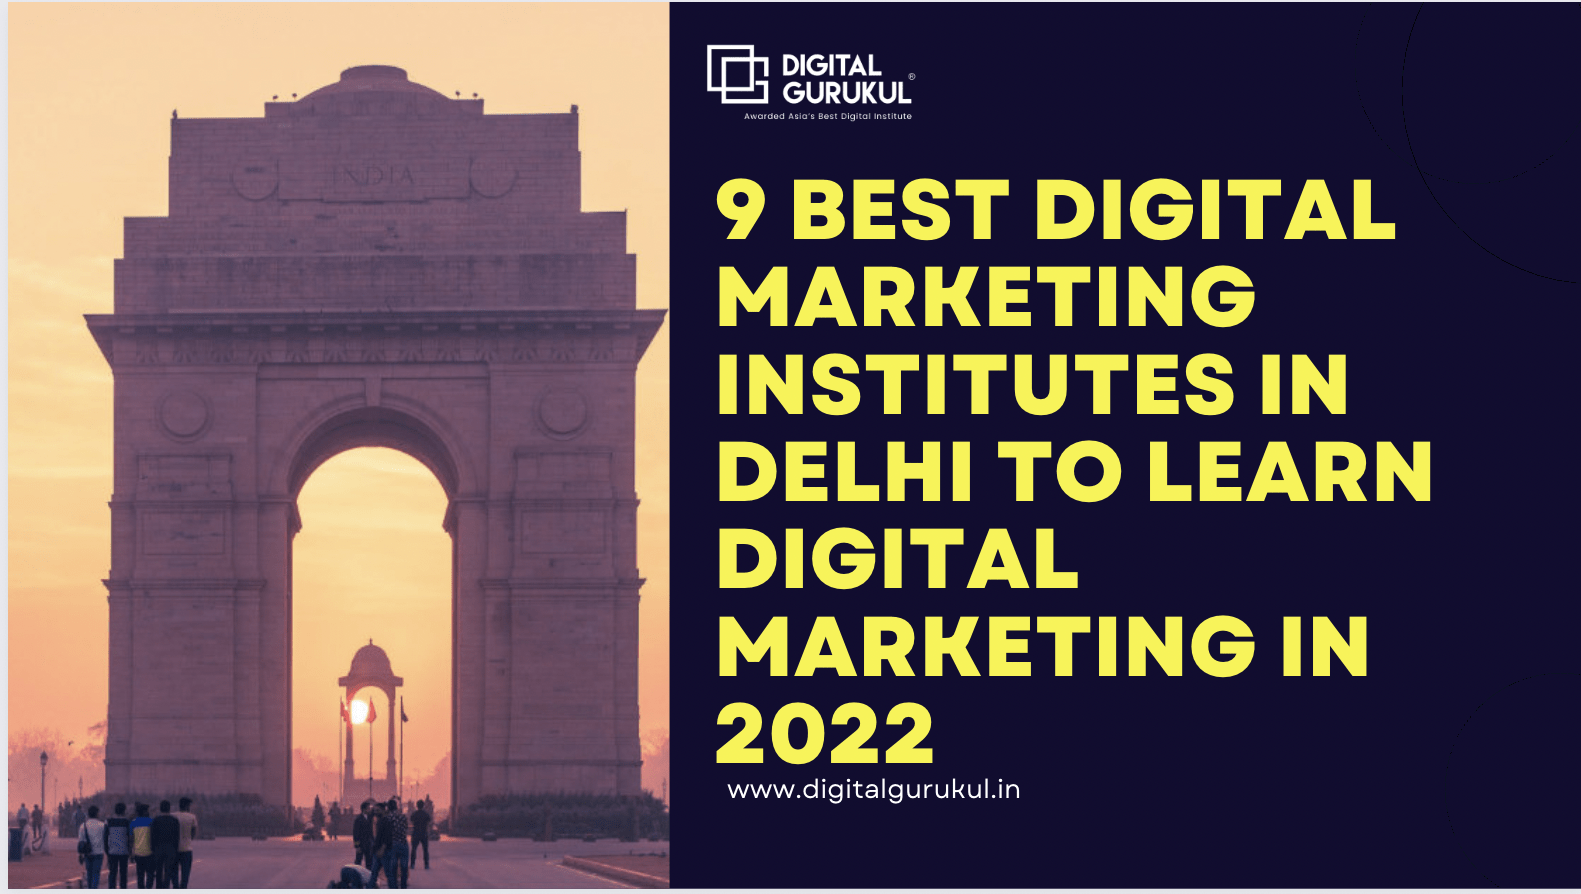 9 Best Digital Marketing Institutes in Delhi to Learn Digital Marketing in 2022